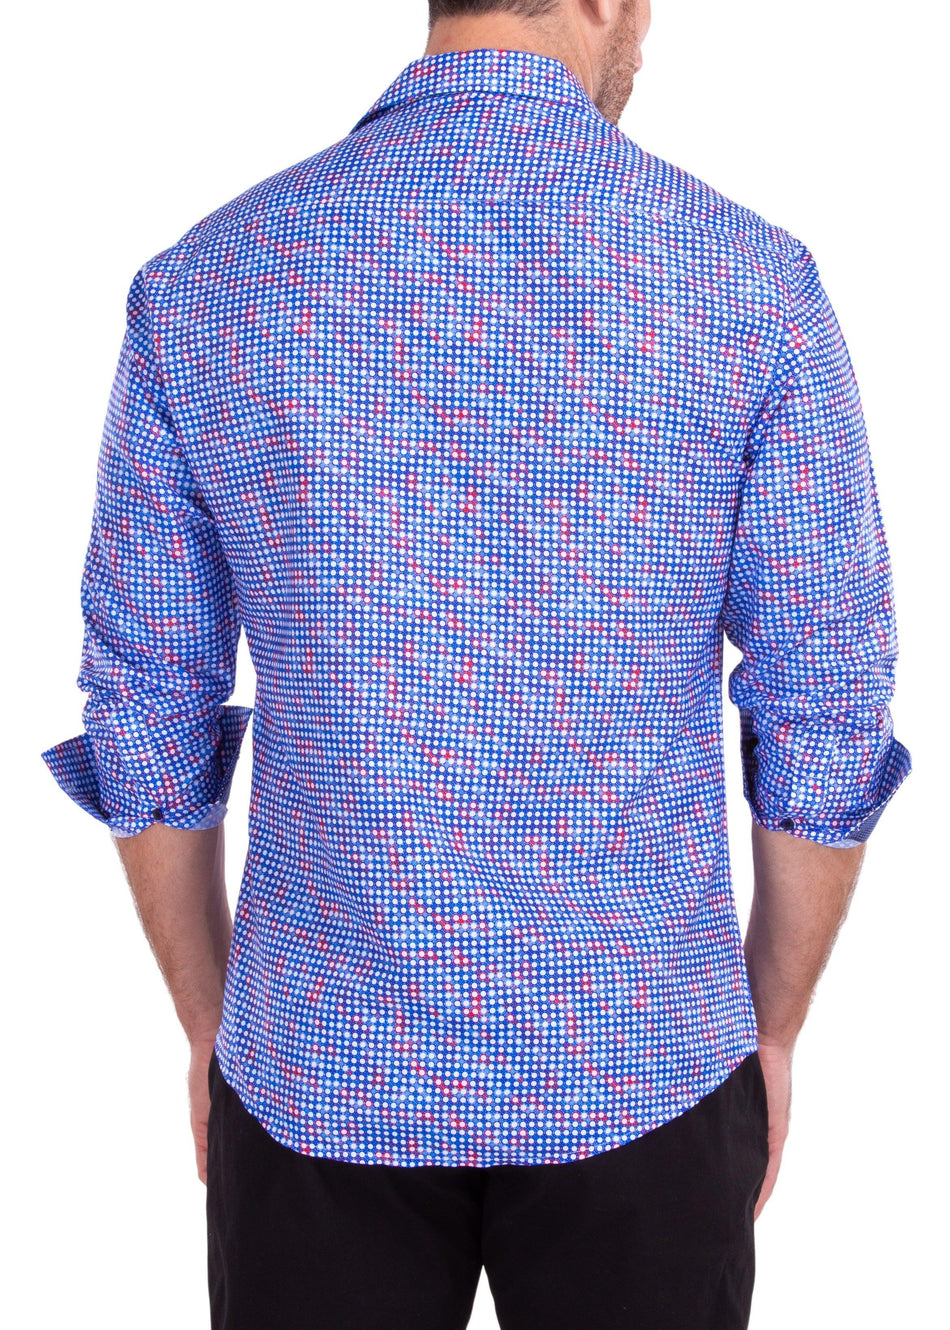 Geometric Dot Print Blue Long Sleeve Button Up Dress Shirt